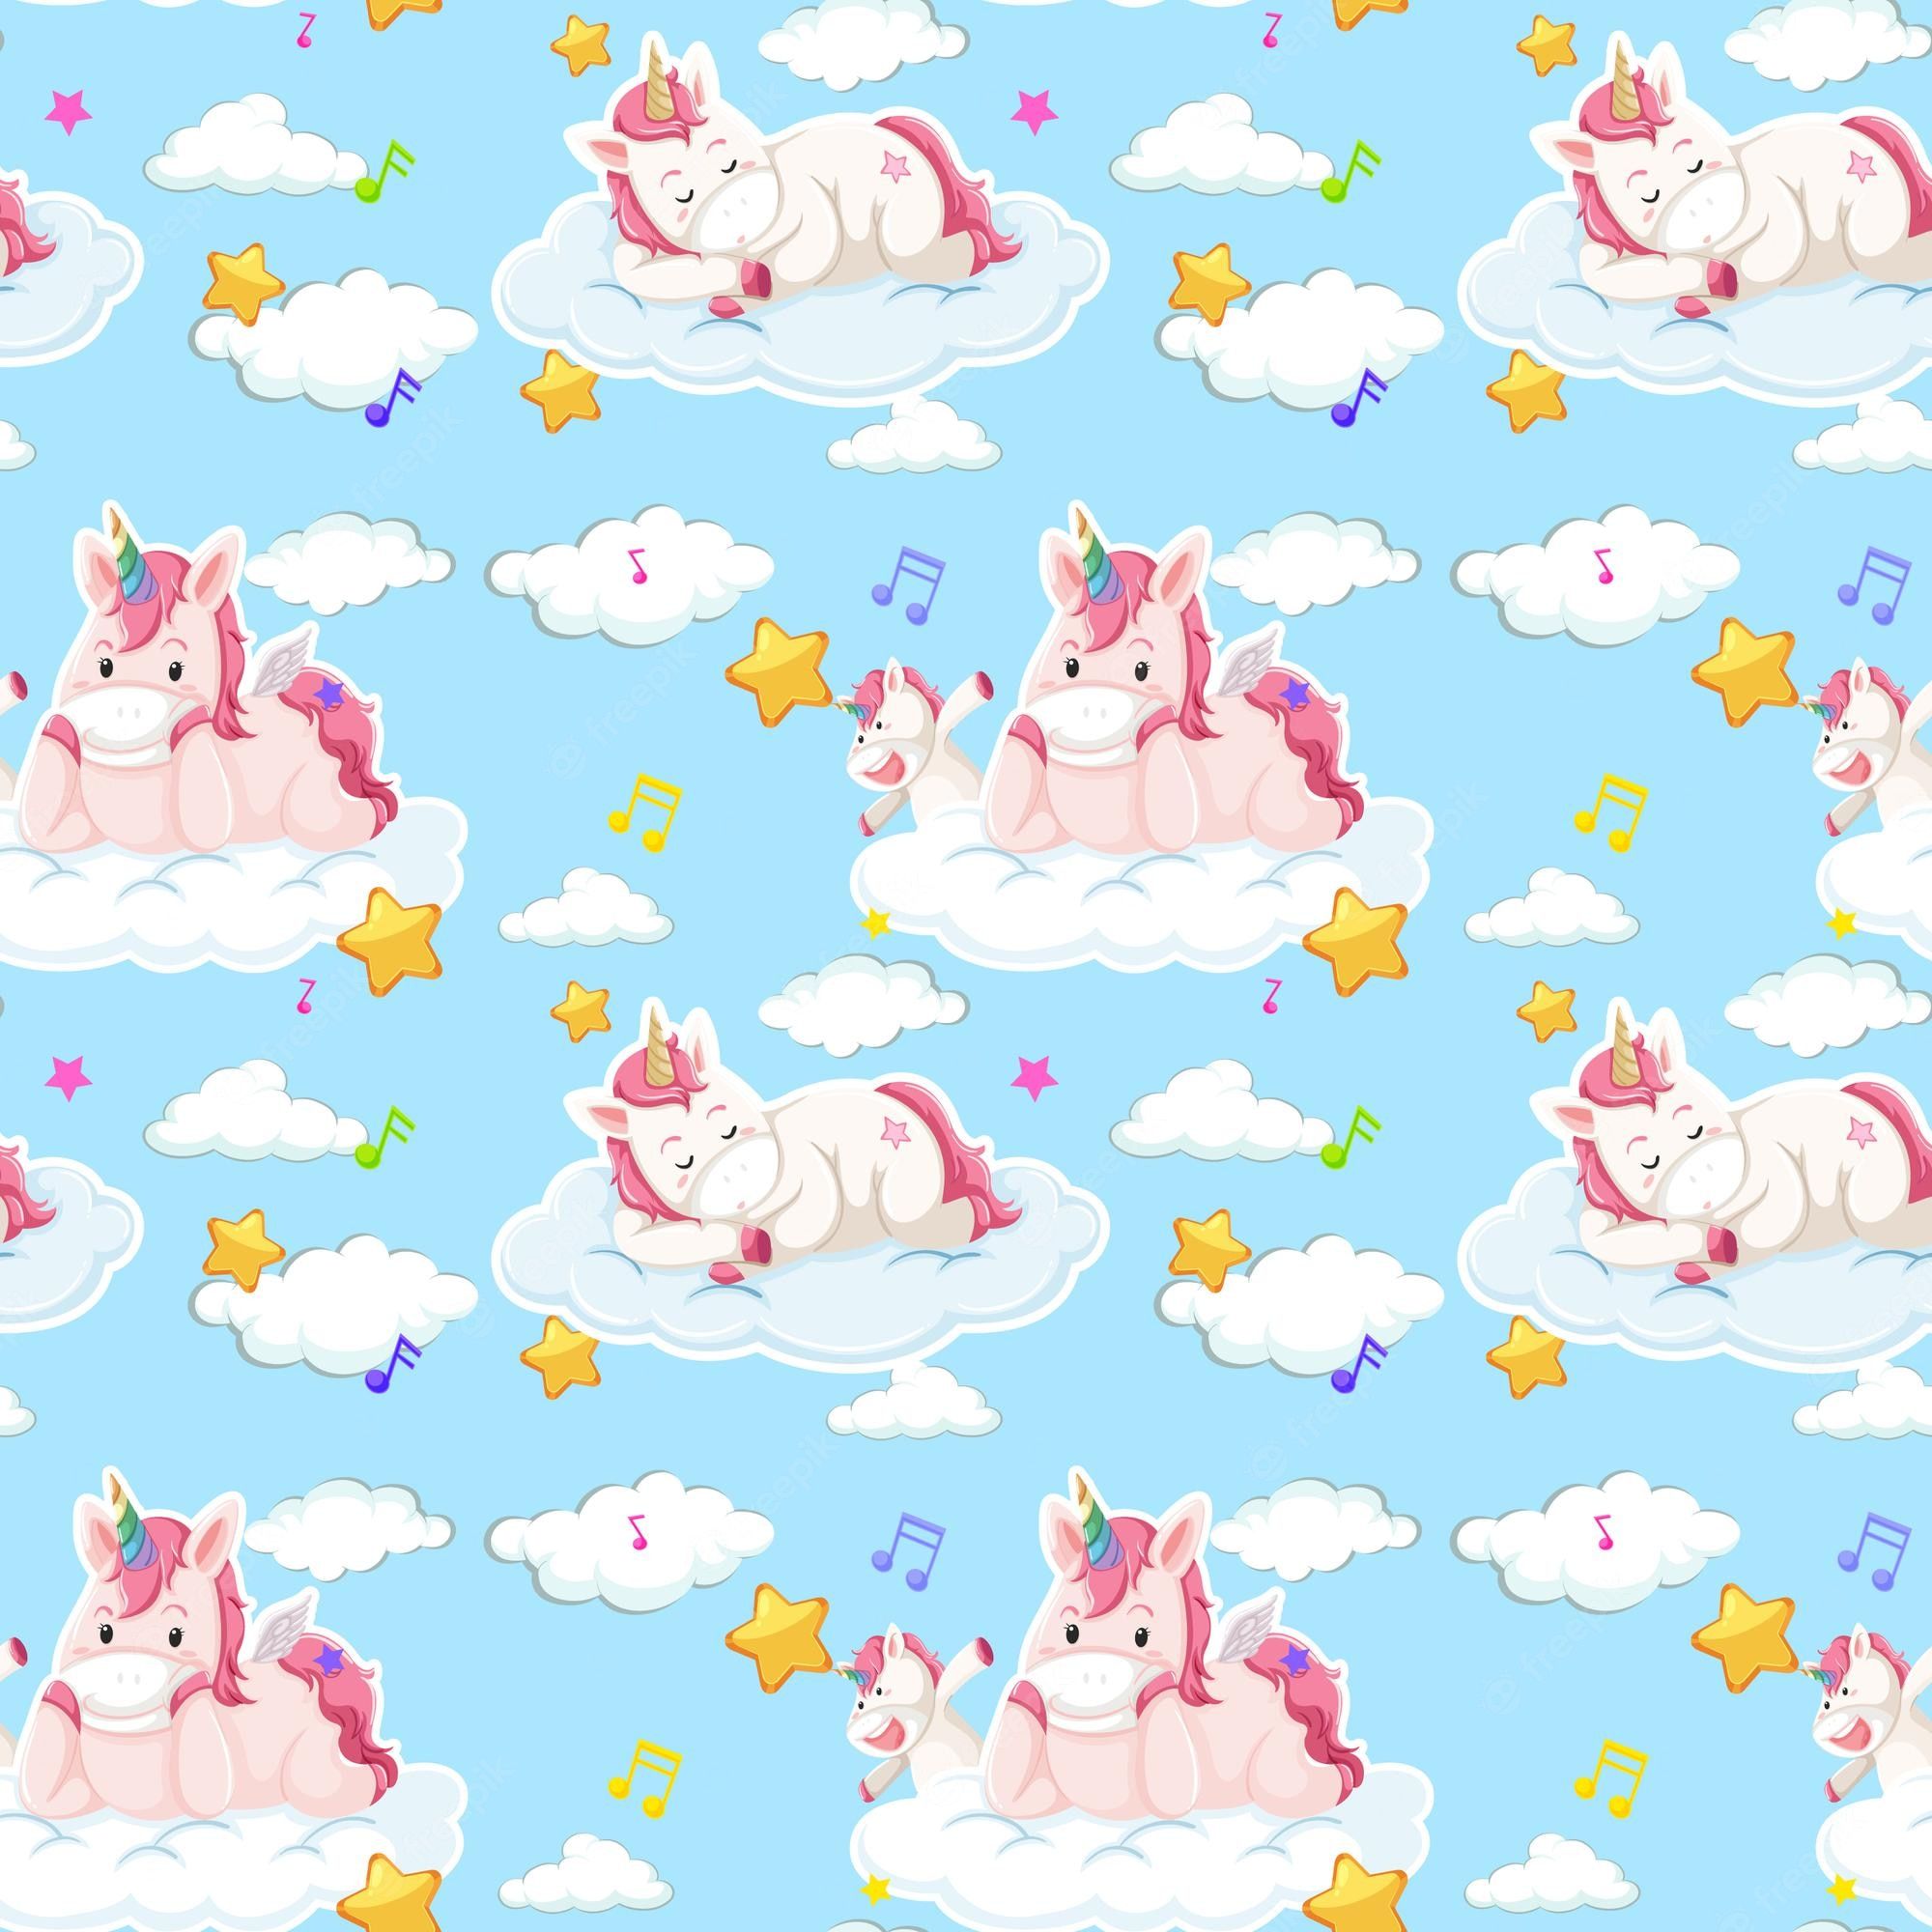 A pattern of unicorns and stars on clouds - Unicorn